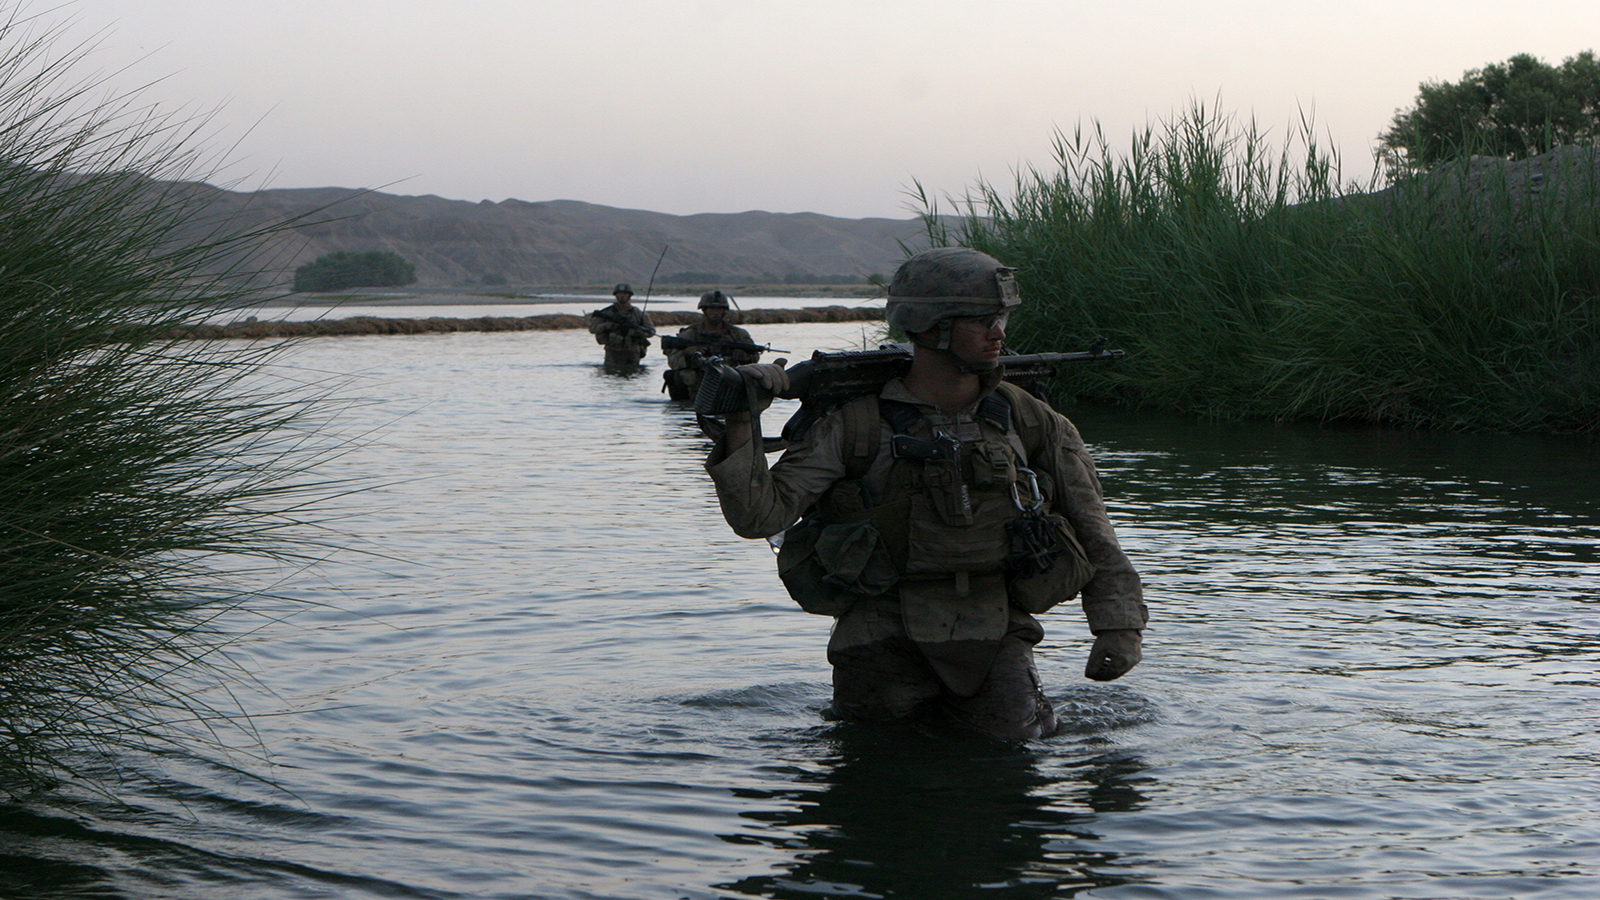 People 1600x900 United States Marine Corps M240 War in Afghanistan military water standing in water uniform gun helmet looking away